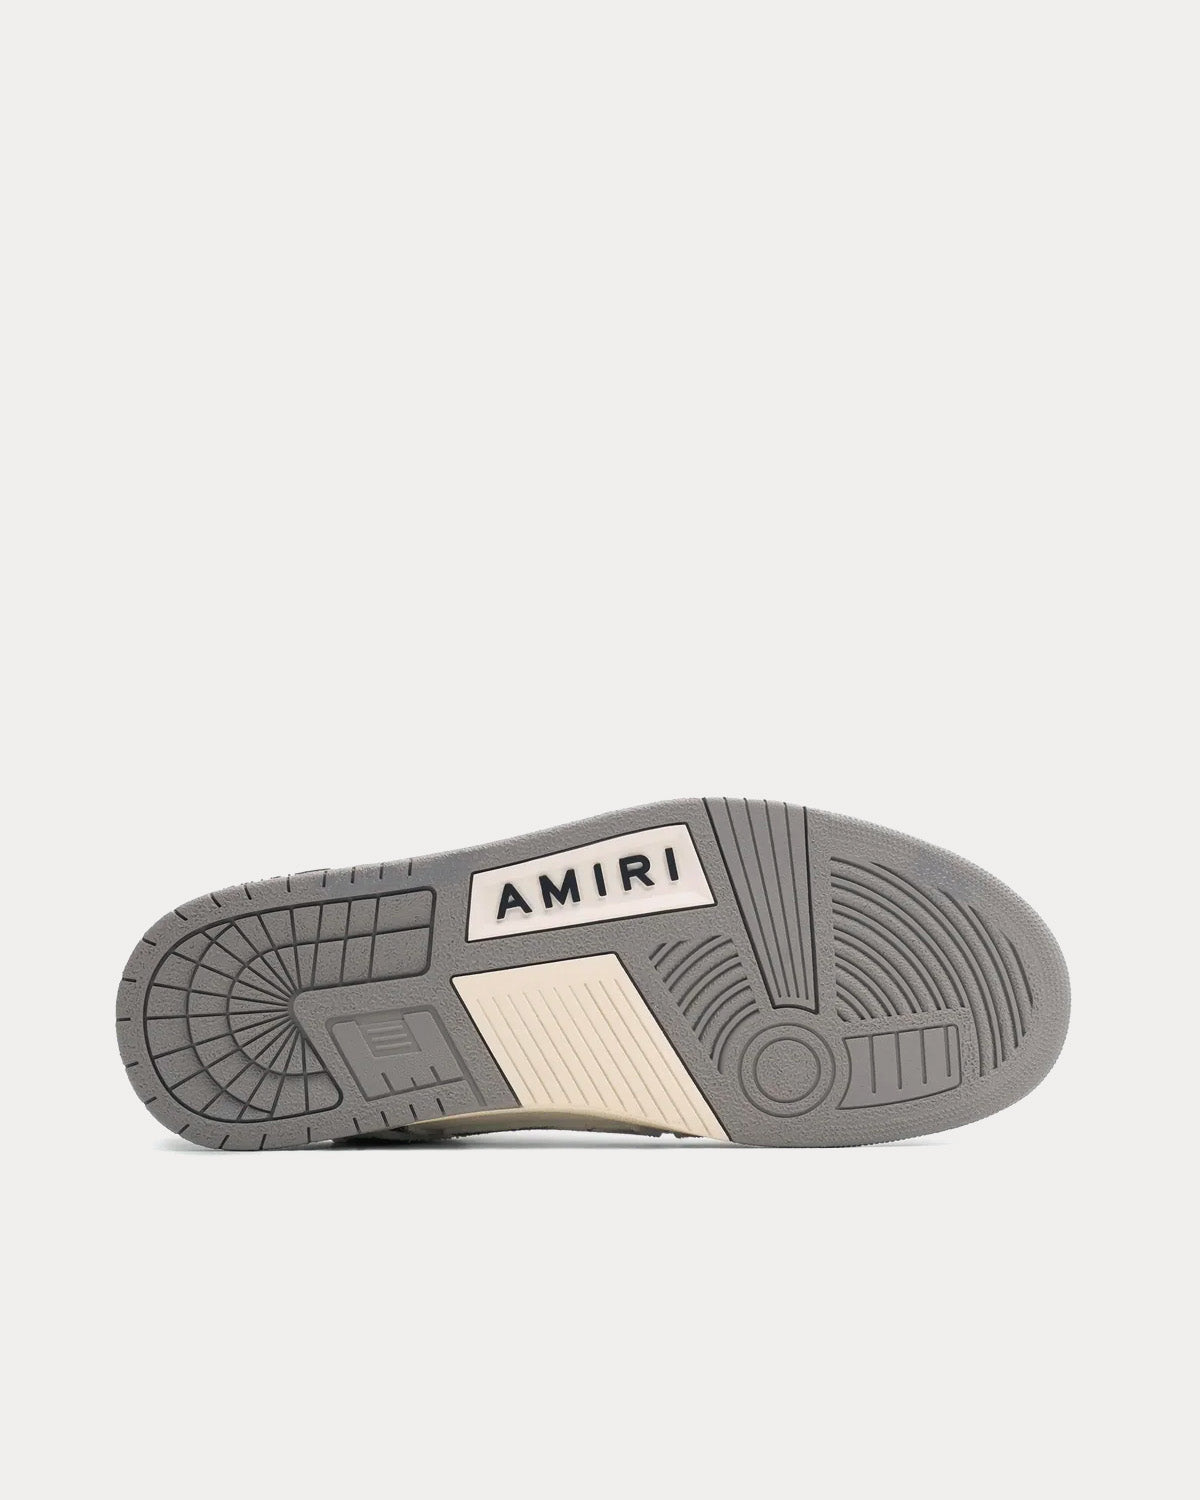 AMIRI Skel Top Tie Dye Grey Low Top Sneakers - Sneak in Peace